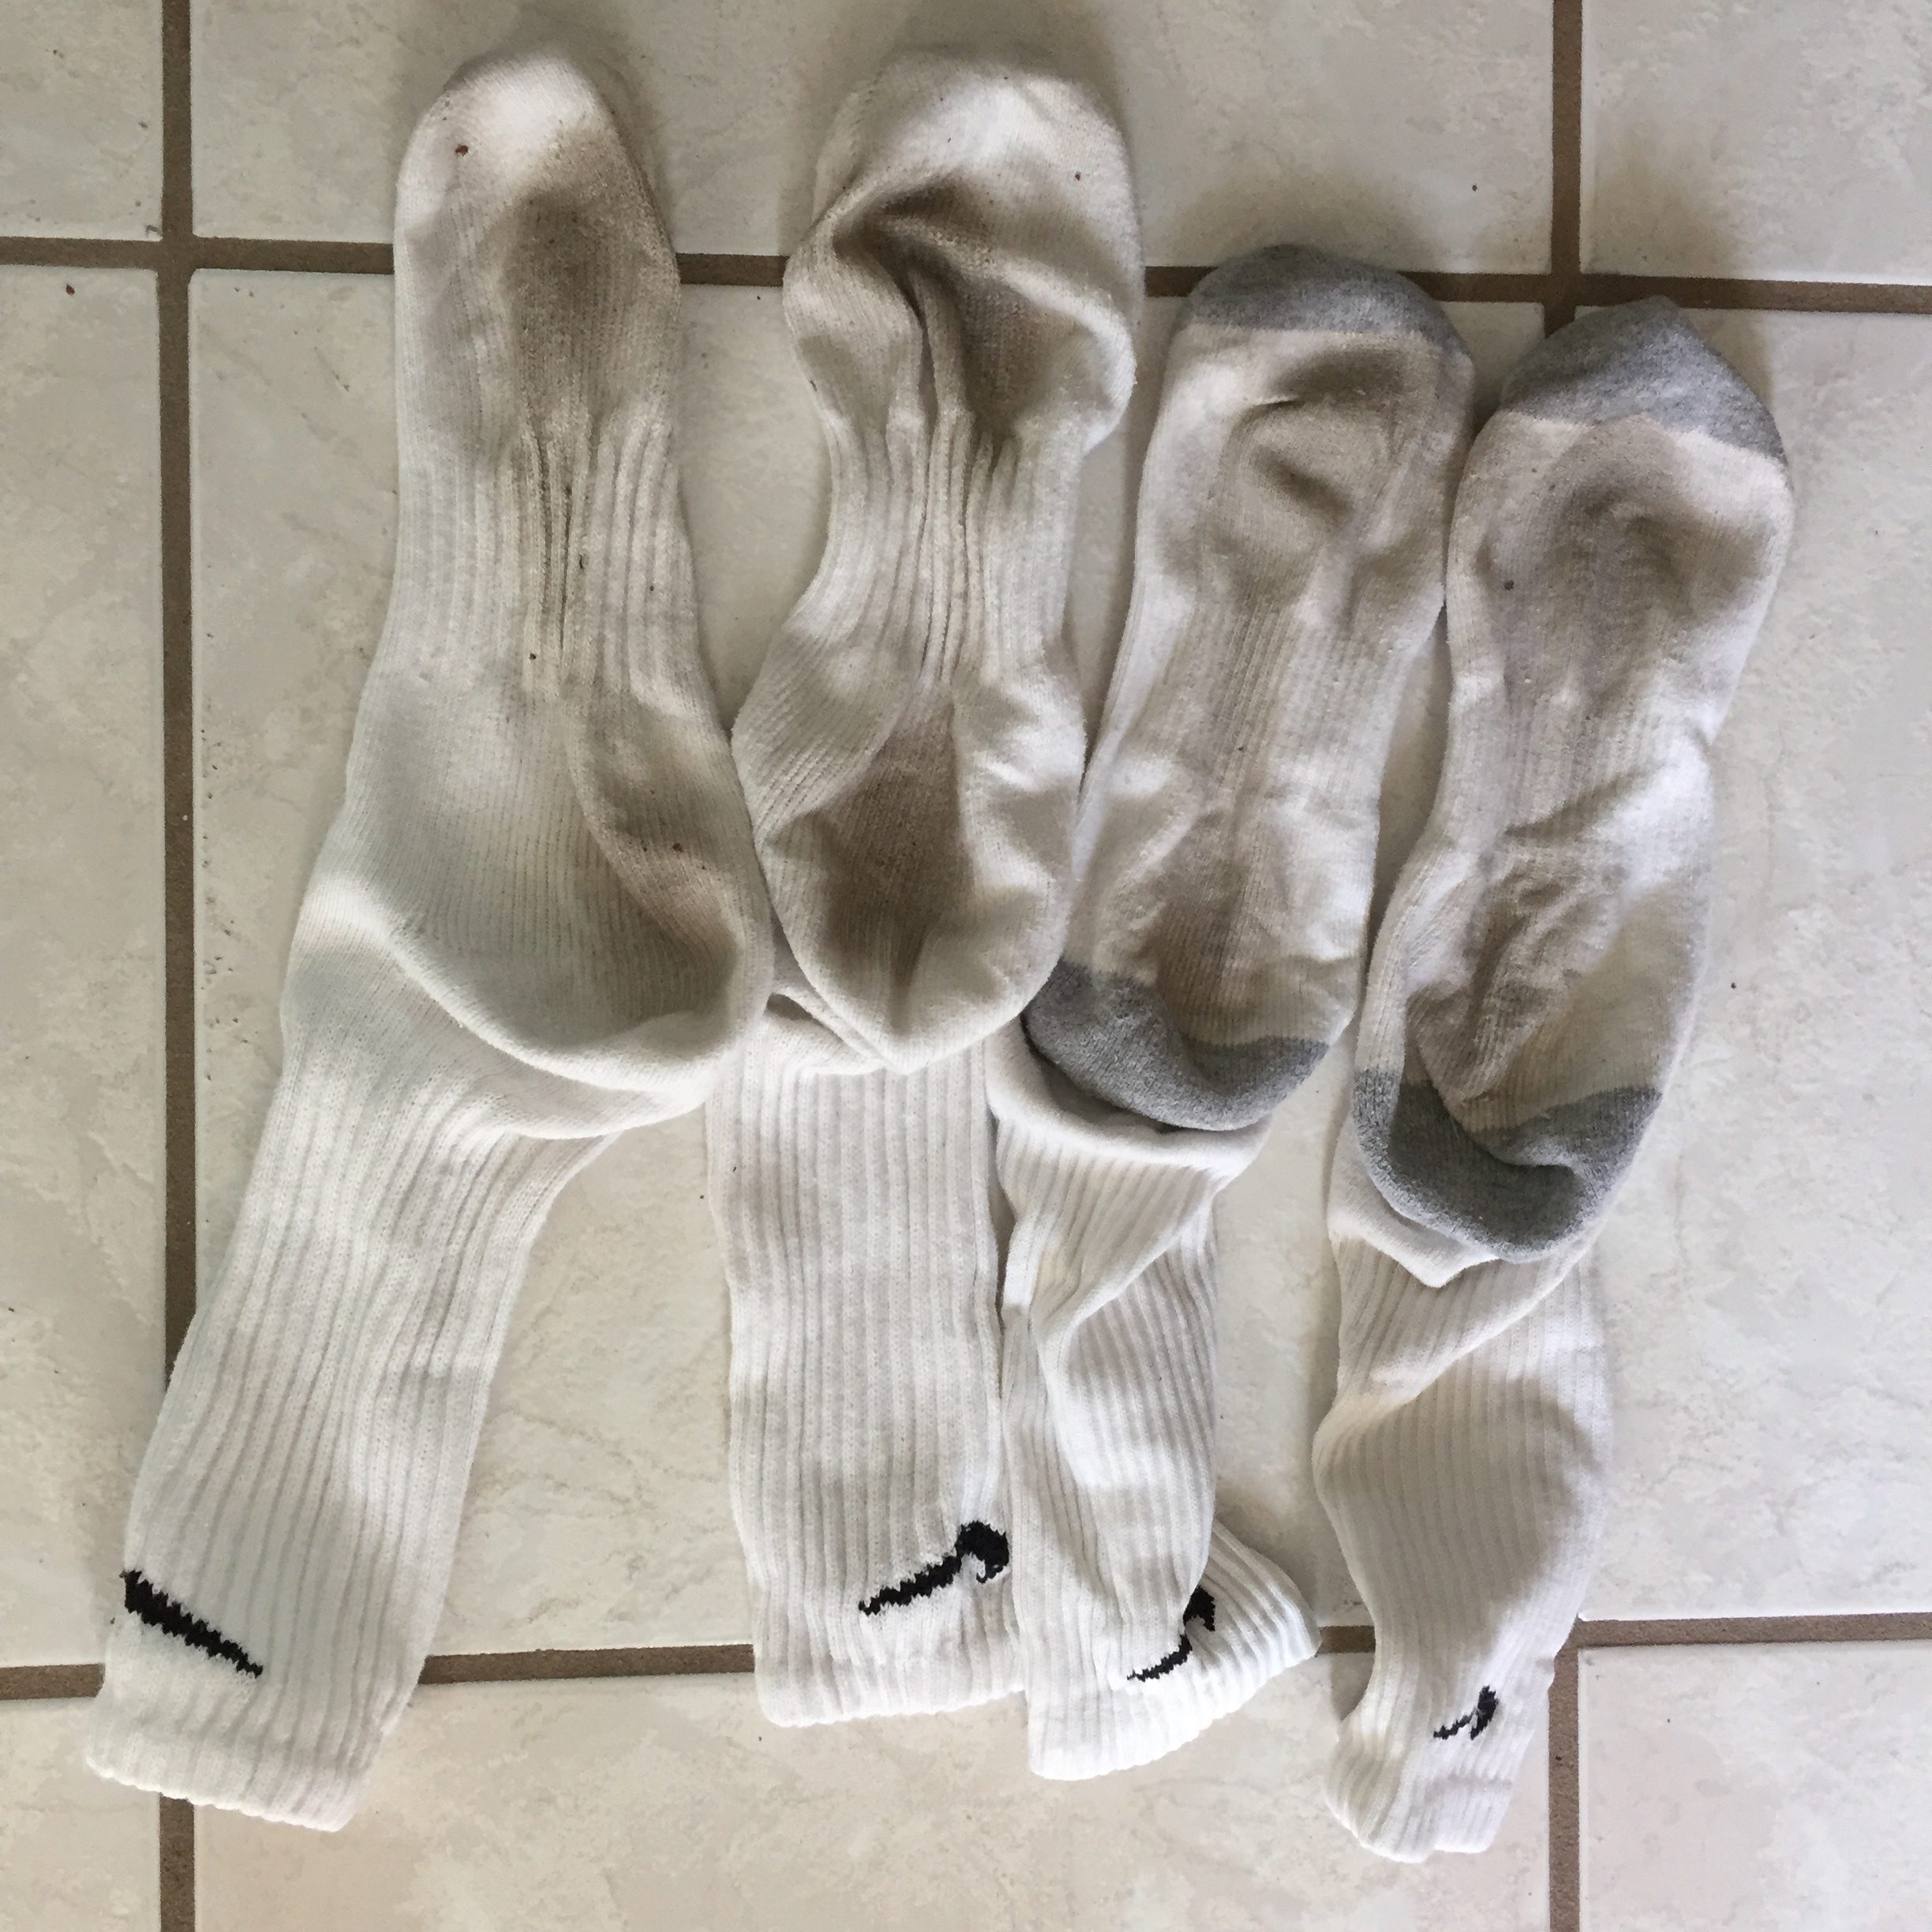 a group of white socks on a tile floor